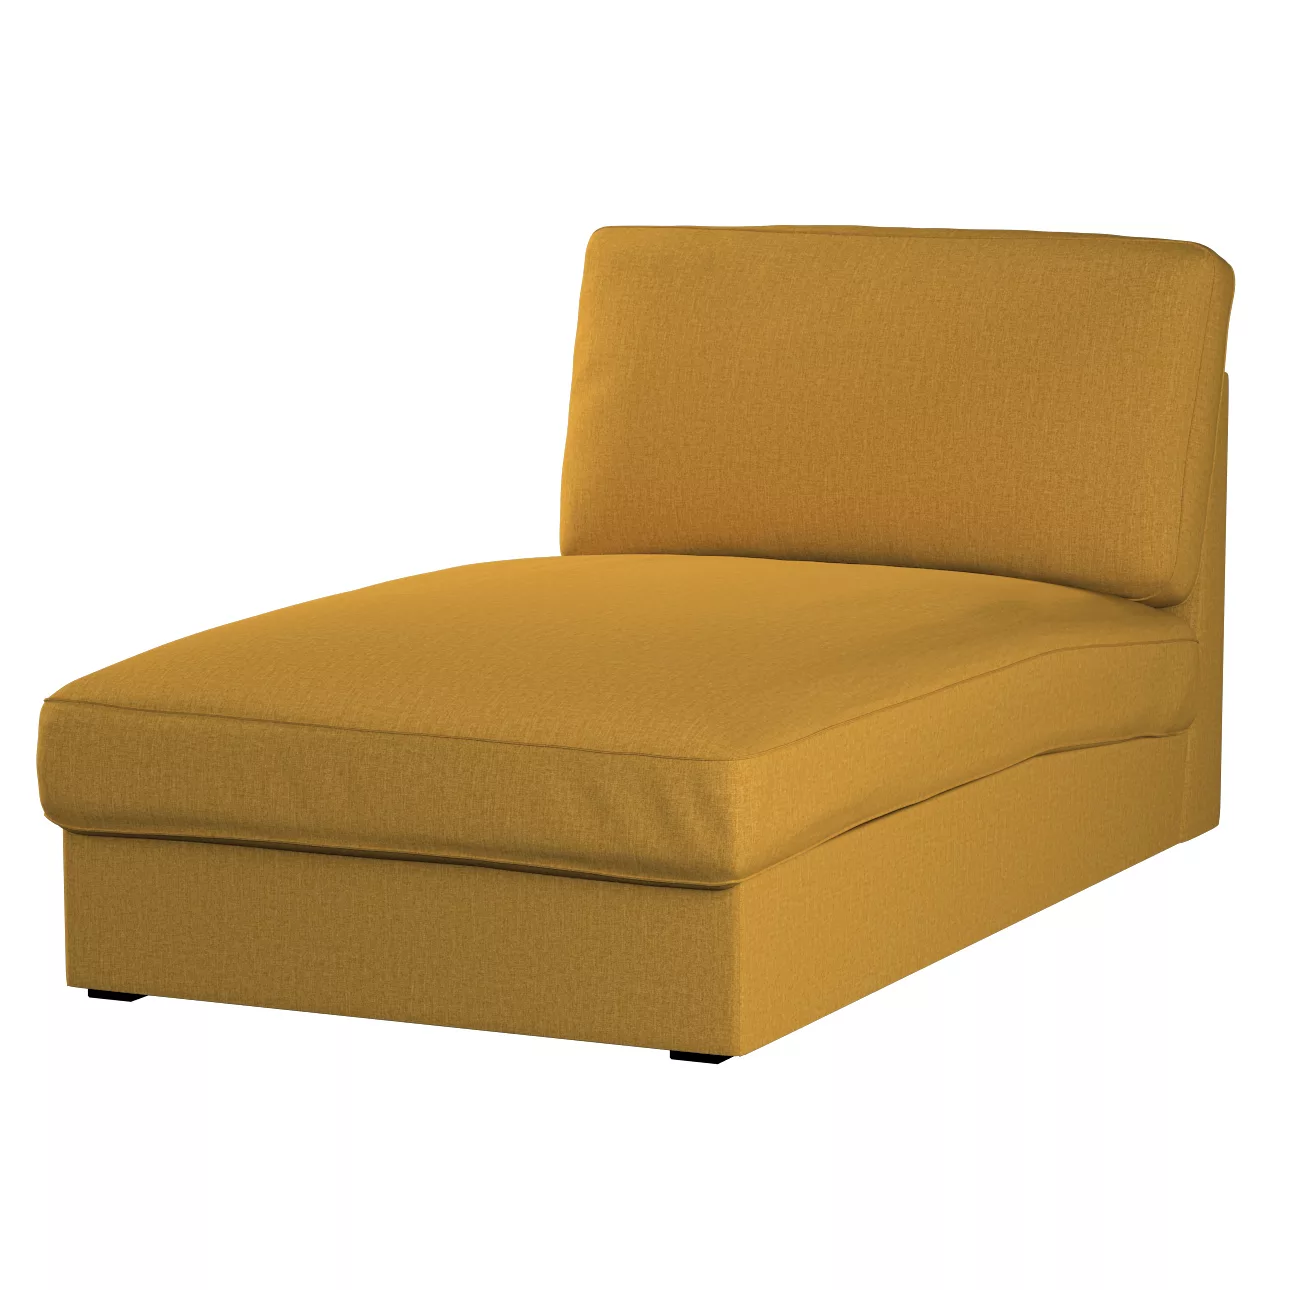 Bezug für Kivik Recamiere Sofa, senfgelb, Bezug für Kivik Recamiere, City ( günstig online kaufen